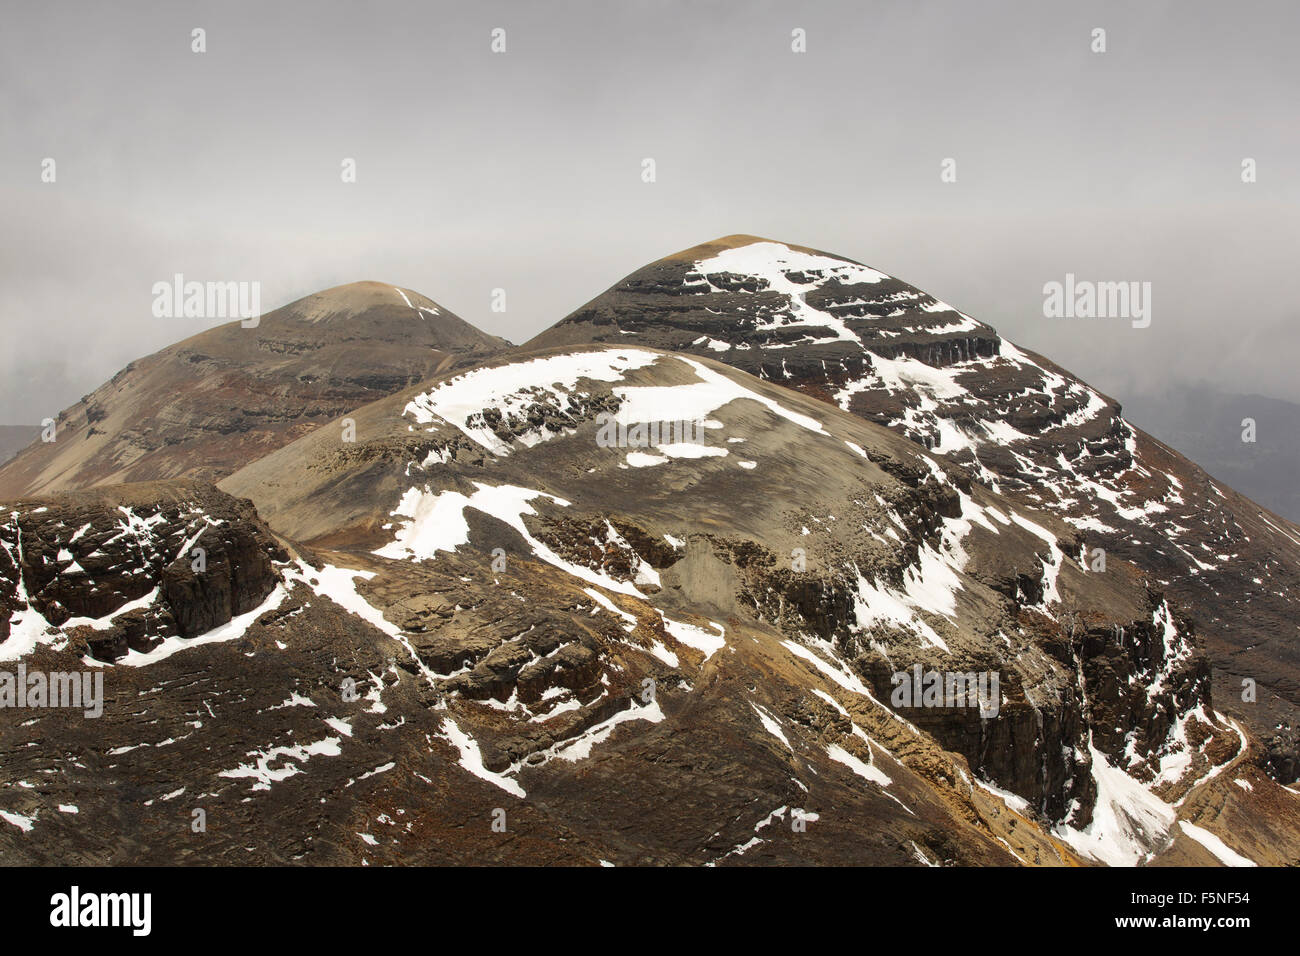 Il picco di Chacaltaya stazione (5,395m), che fino al 2009 aveva un ghiacciaio che ha sostenuto i mondi più alta ski lift oltre 17.000 piedi. Il ghiacciaio infine completamente scomparso nel 2009 a causa di cambiamenti climatici indotti di fusione. Foto Stock